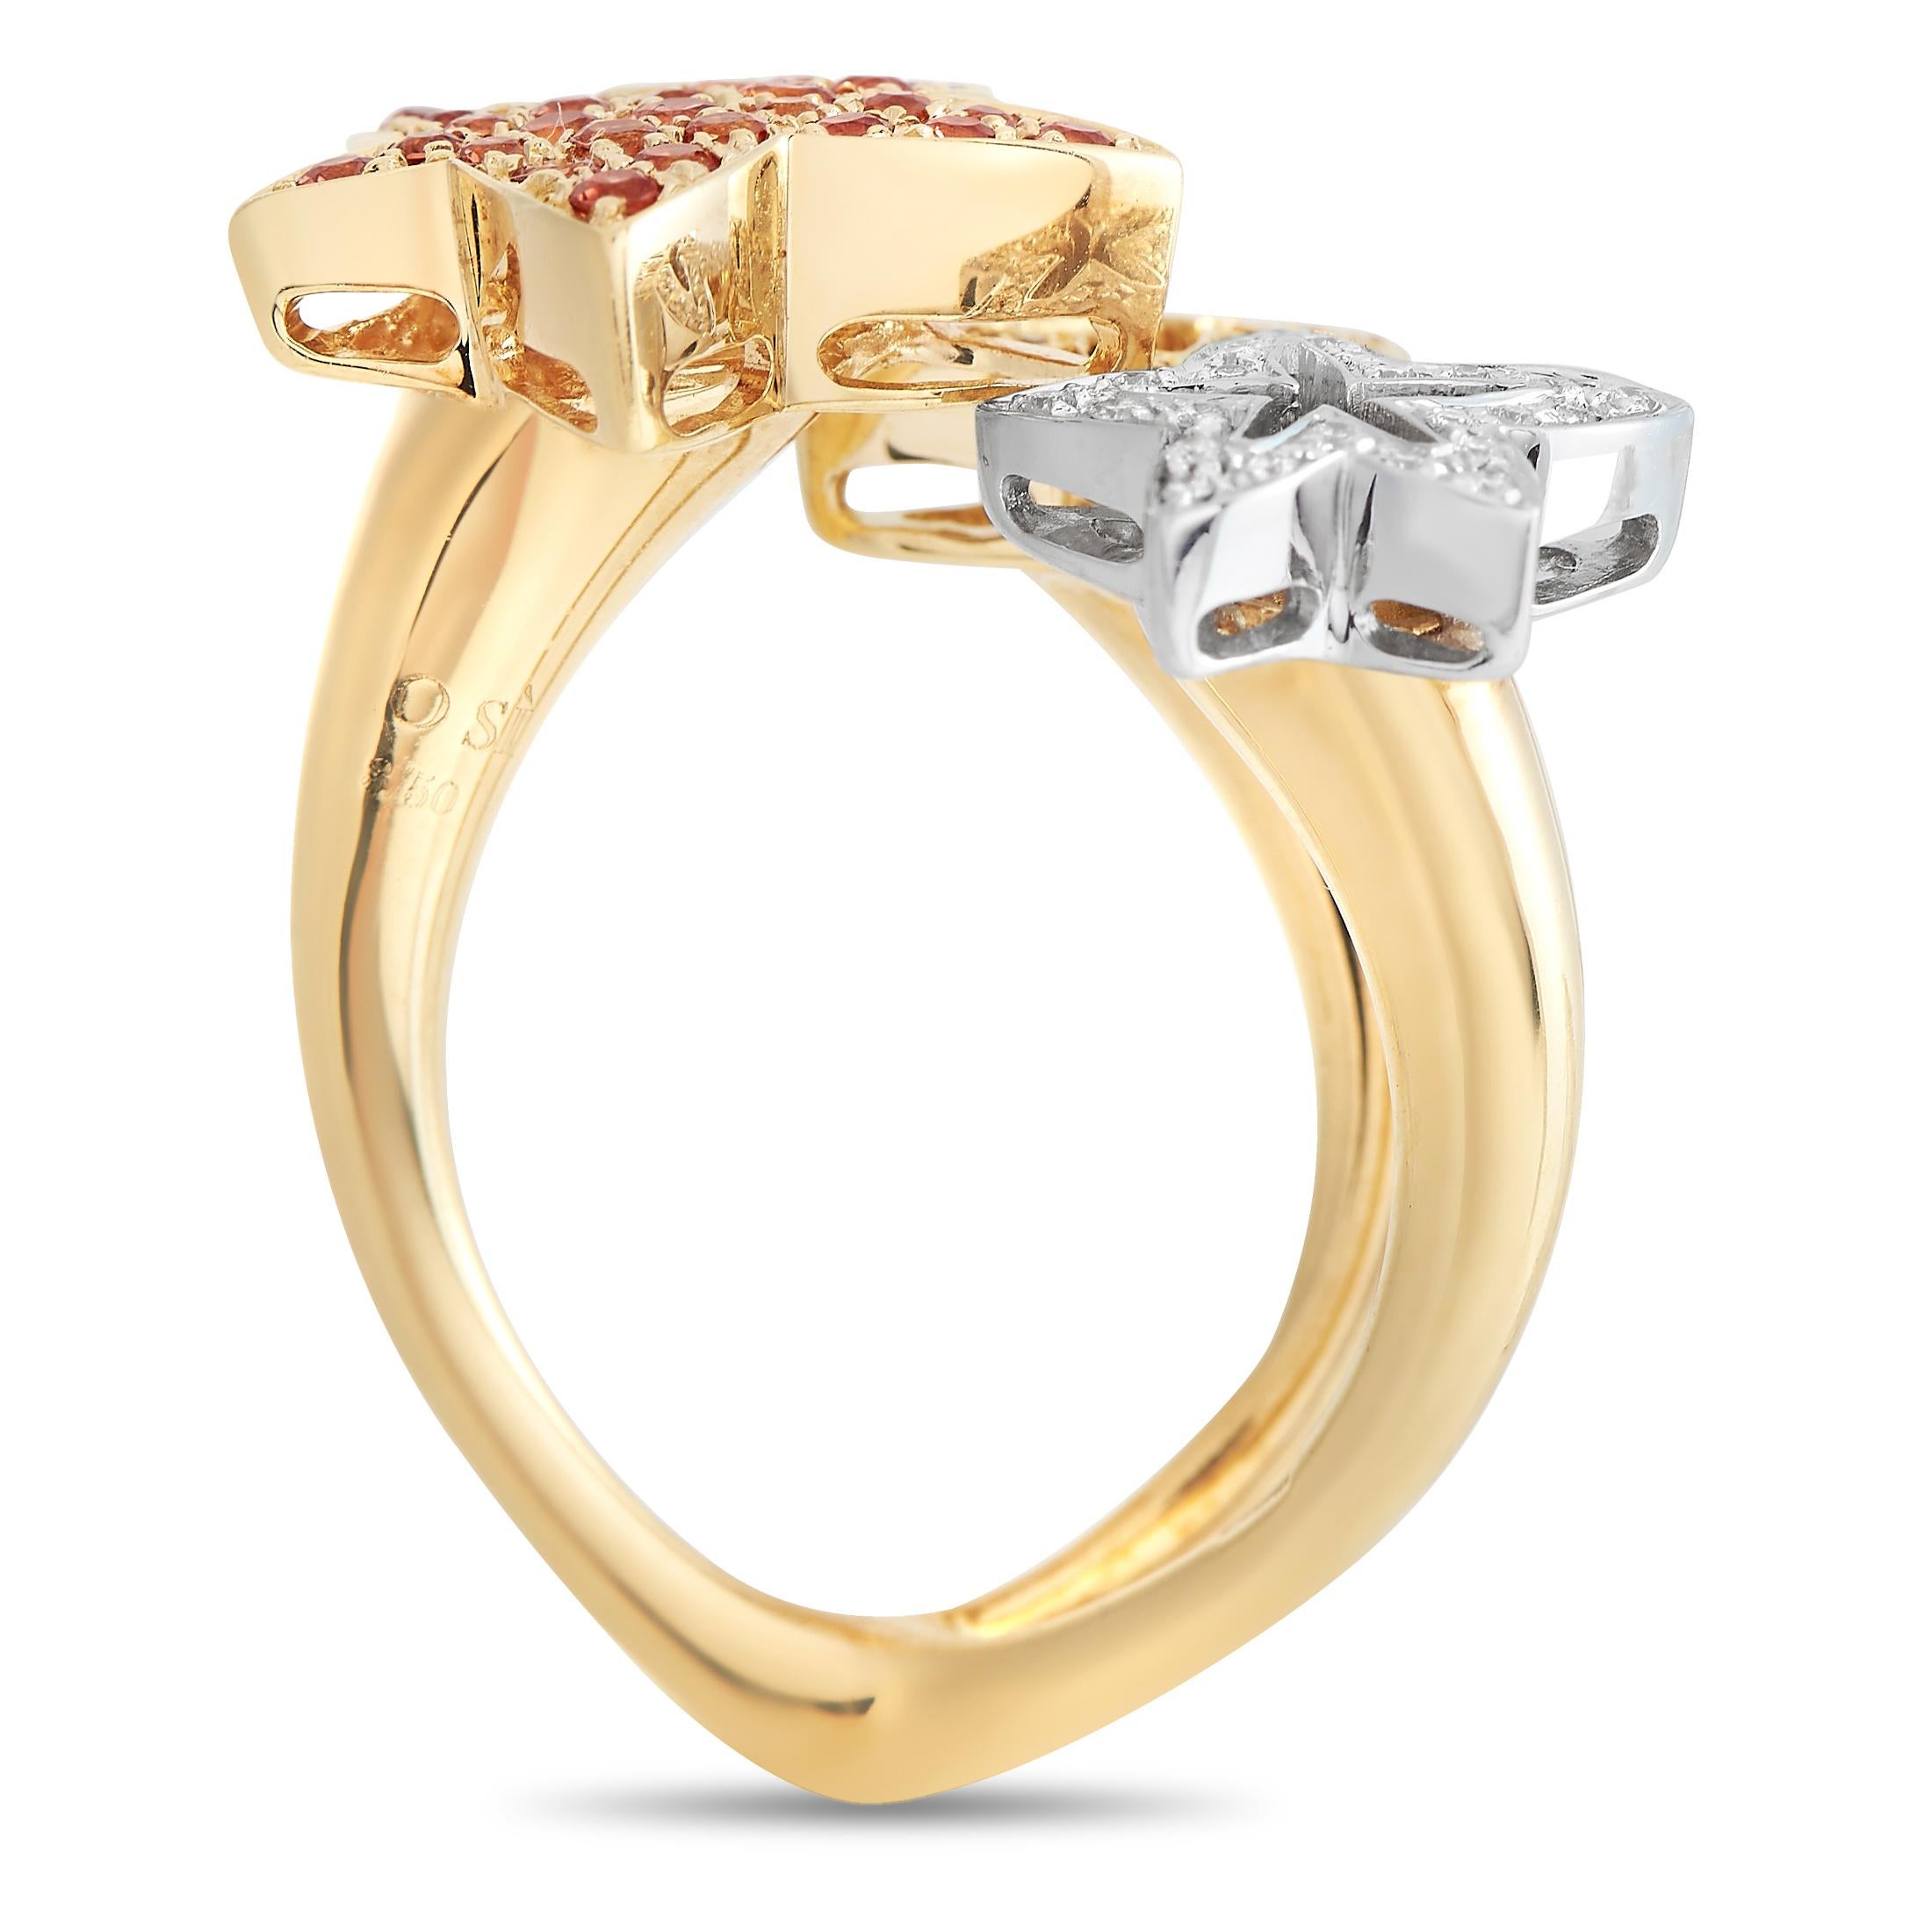 Mit diesem glitzernden Ring am Finger wird Ihr Stil mit Sicherheit glänzen. Diese funkelnde Kreation der italienischen Schmuckmarke Io Si zeichnet sich durch einen stilisierten geteilten Schaft mit einer Wünschelruten-Silhouette aus, die von drei